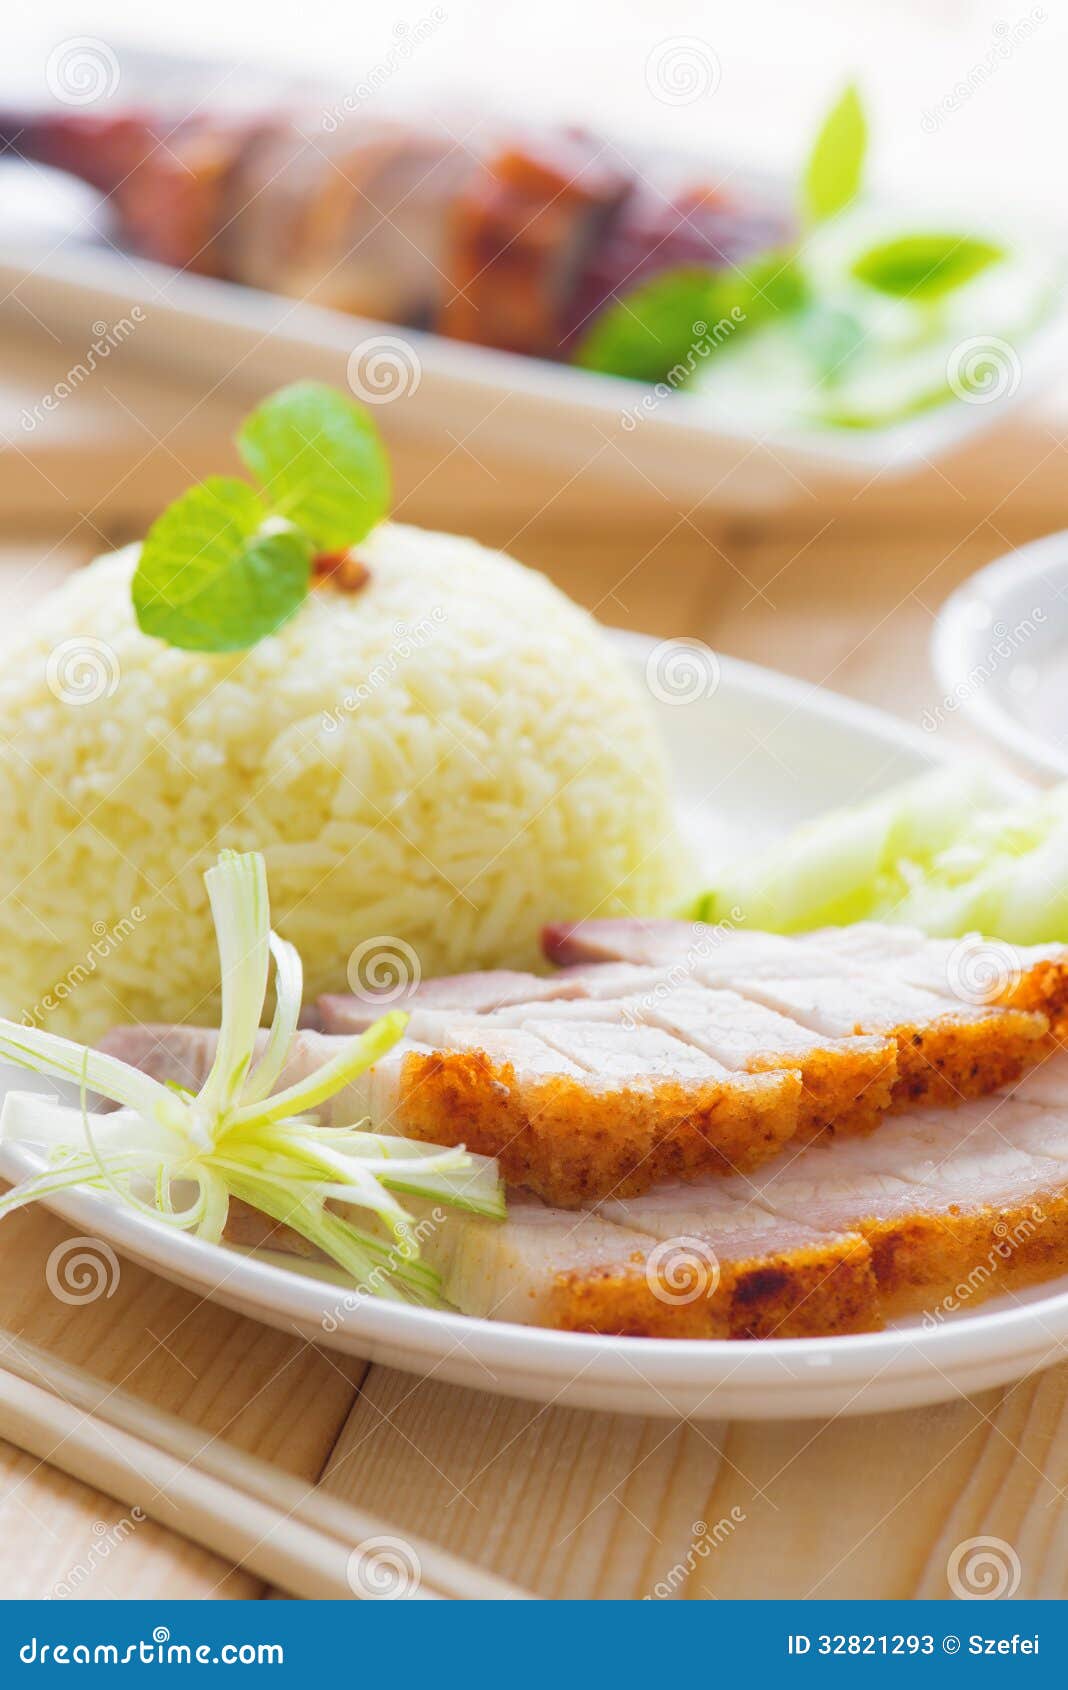 Siu Yuk or Roasted Pork Chinese Style Stock Image - Image of oriental ...